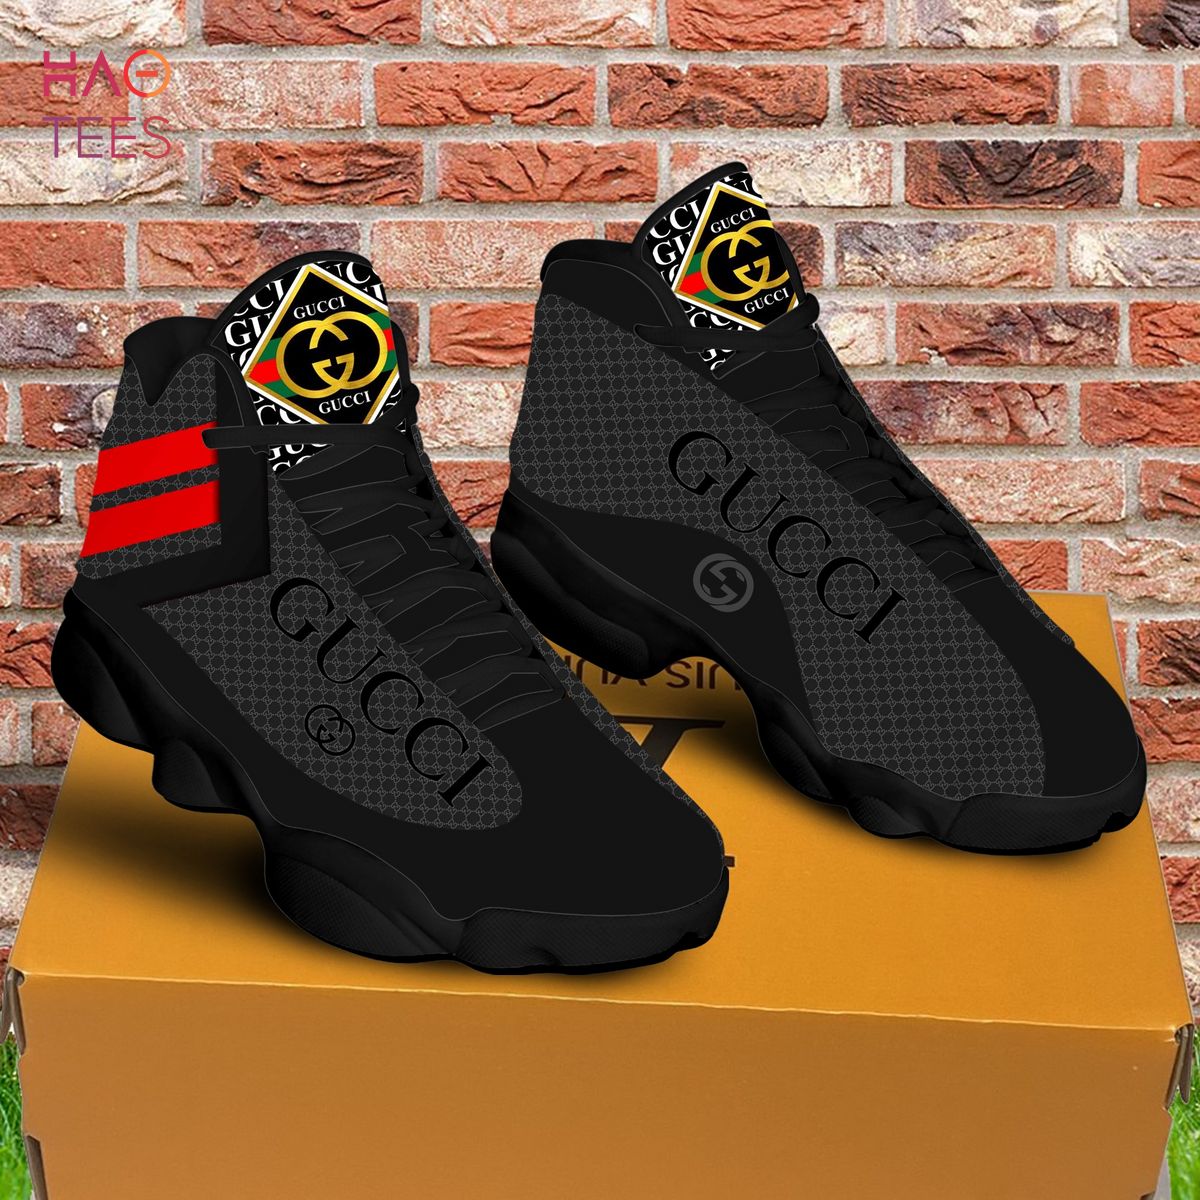 Luxury Gucci Black Red Air Jordan 13 Sneakers Shoes